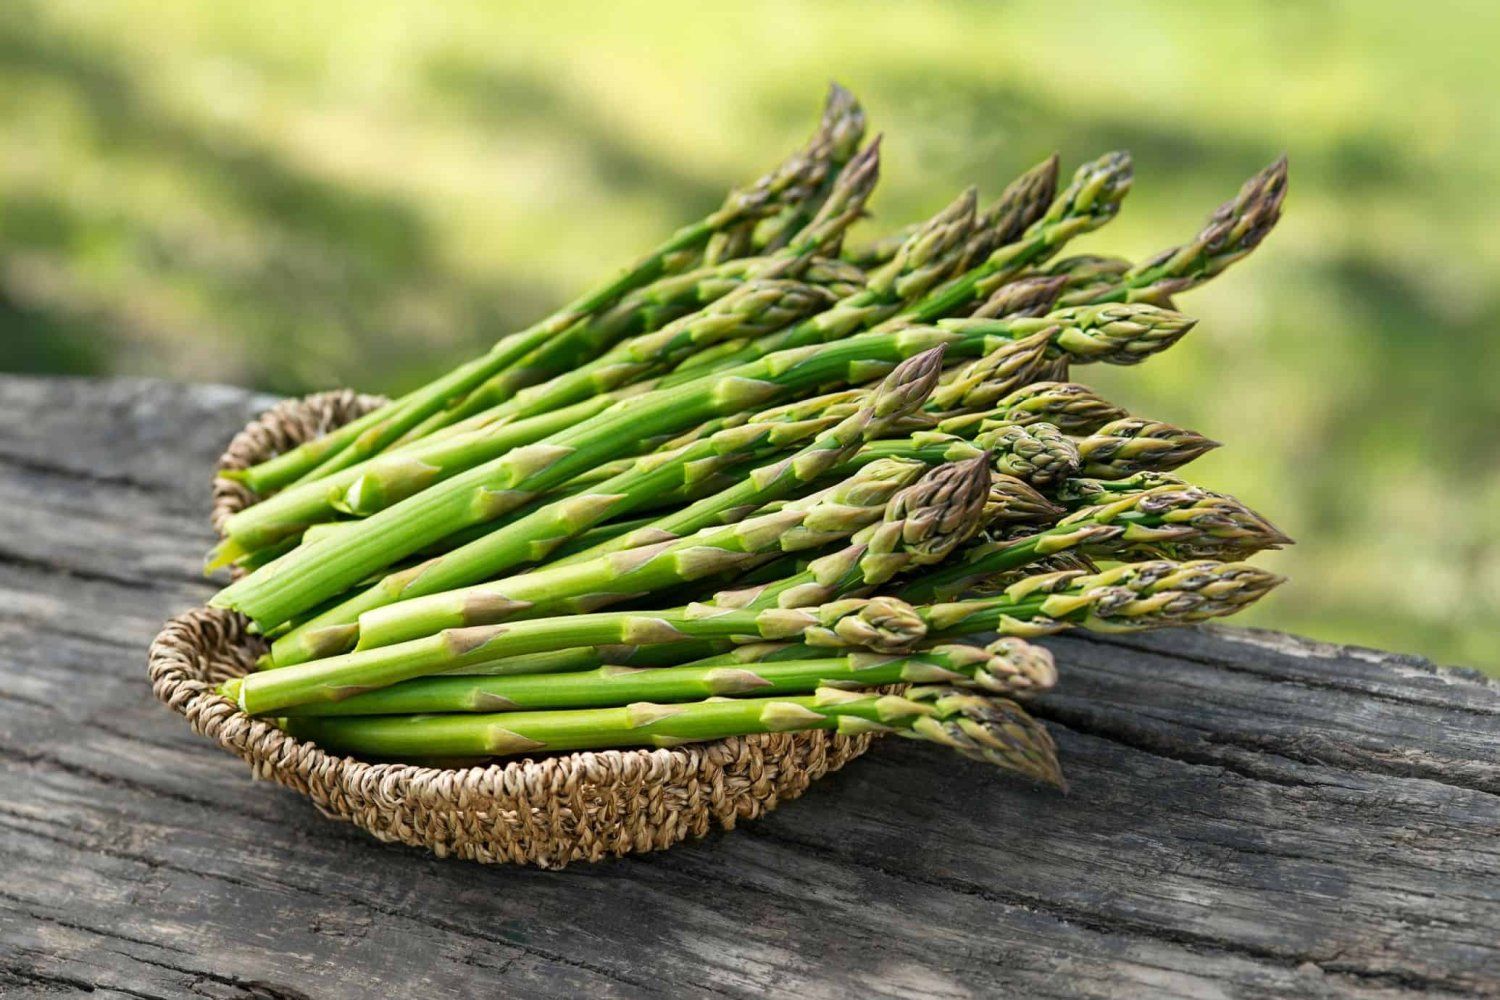 Previous Happening: Spring Week 8: Asparagus is here!